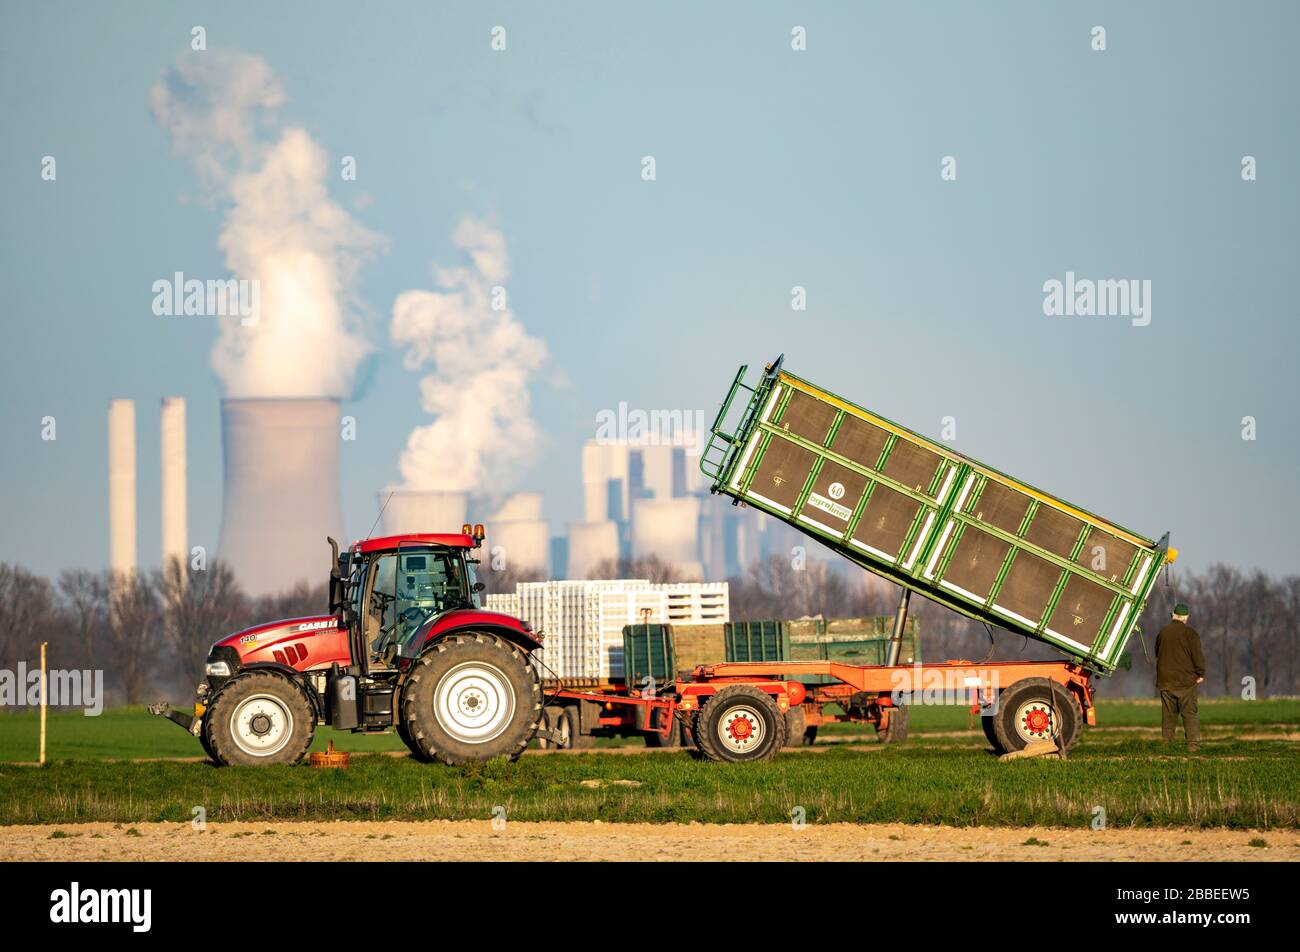 Traktor arbeitet im Frühjahr auf einem Feld, Kartoffelanpflanzmaschine, Aussaatkartoffeln, Braunkraftwerk Neurath, rheinisches Braunbaugebiet, Deutschland Stockfoto